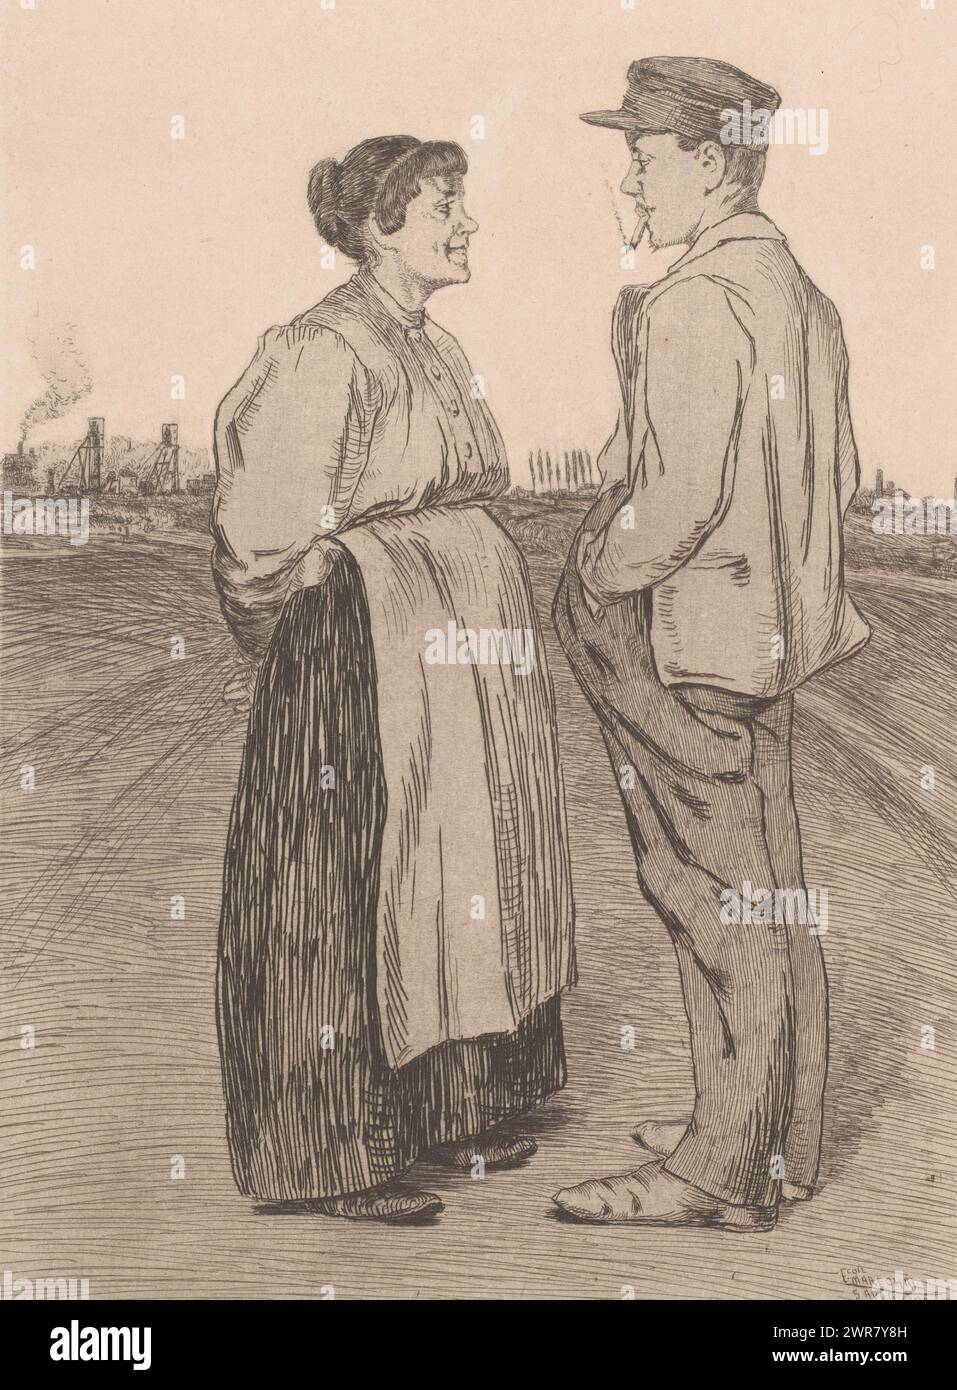 Uomo e donna si trovano uno di fronte all'altro nel campo, Une Proposition (titolo su oggetto), stampatore: Francesco Maréchal, 1895, carta, incisione, altezza 295 mm x larghezza 220 mm, stampa Foto Stock